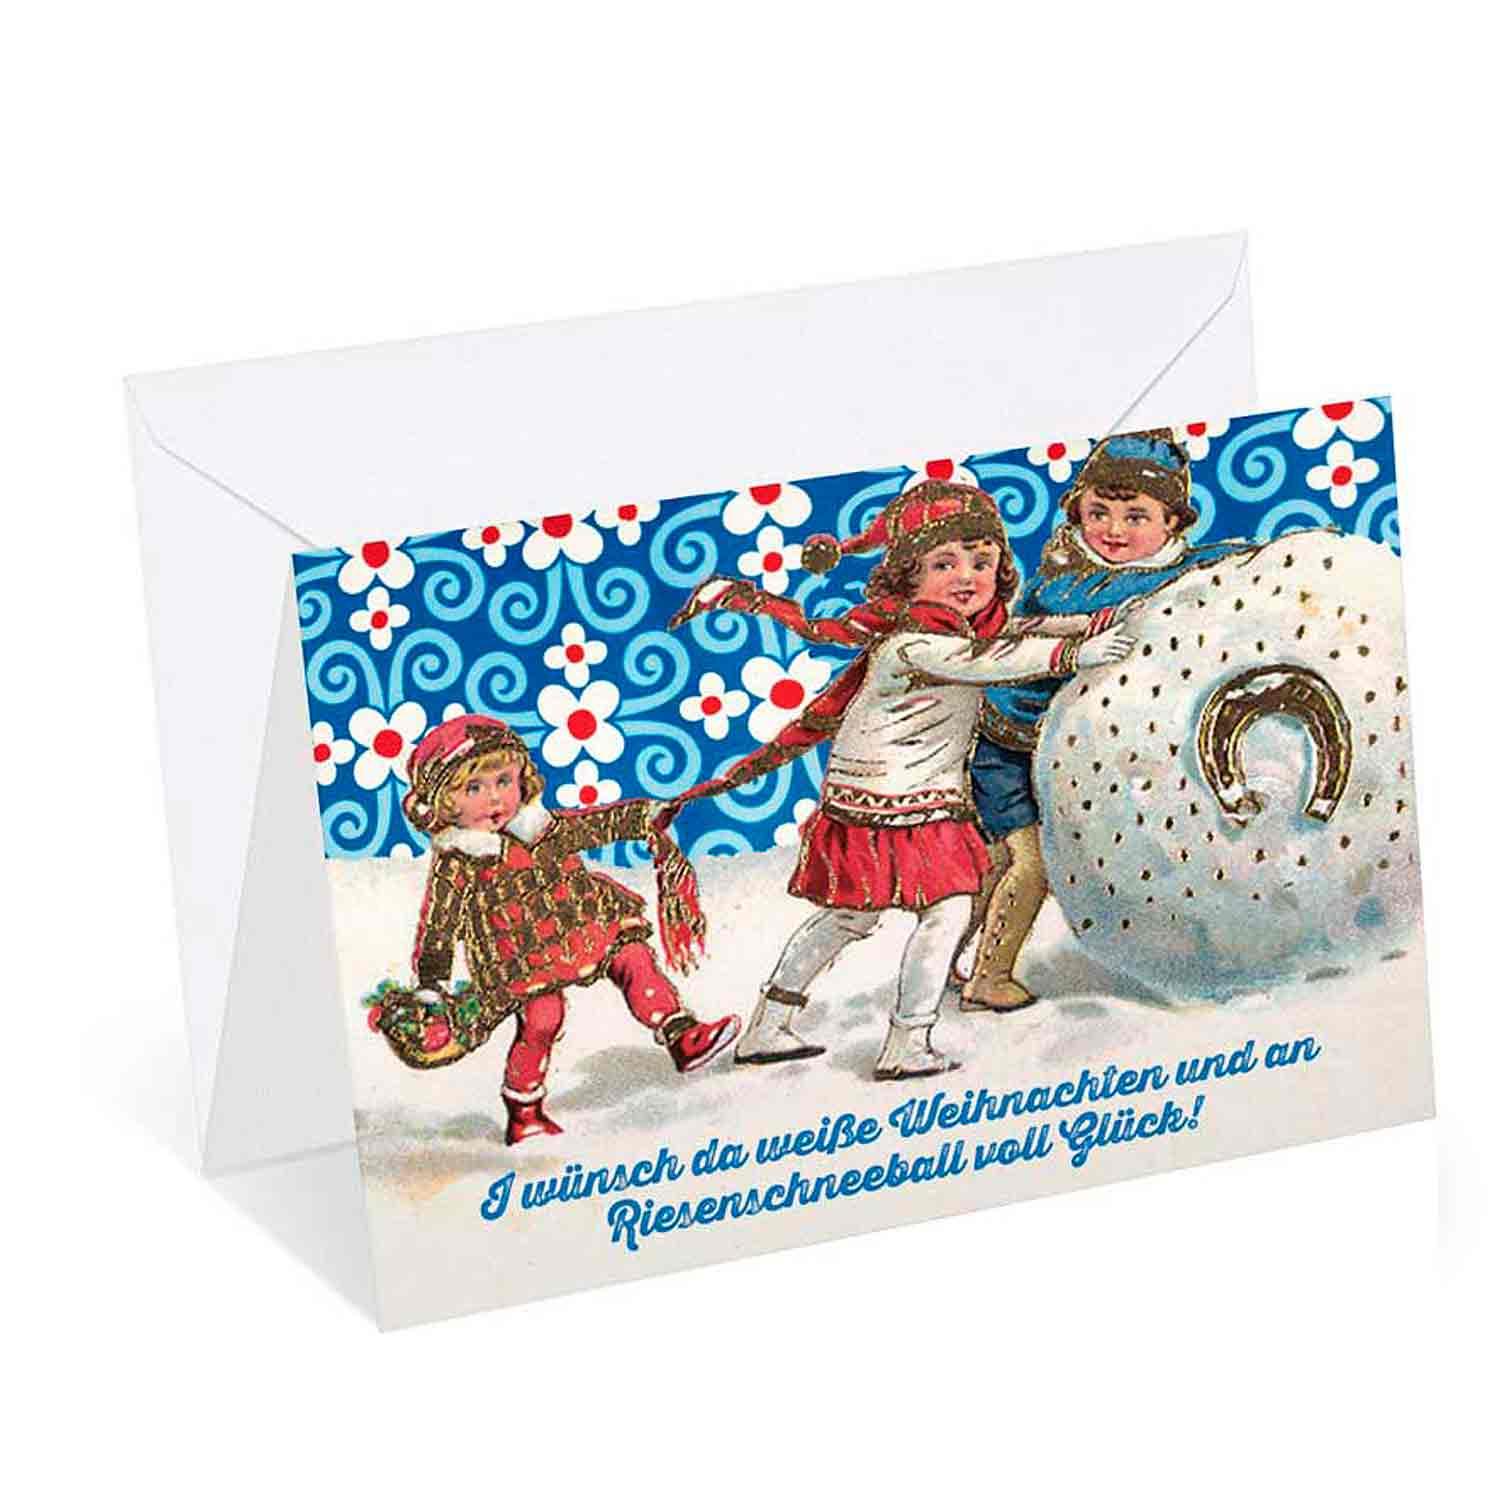 Weihnachtskarte "Weiße Weihnacht" - bavariashop - mei LebensGfui